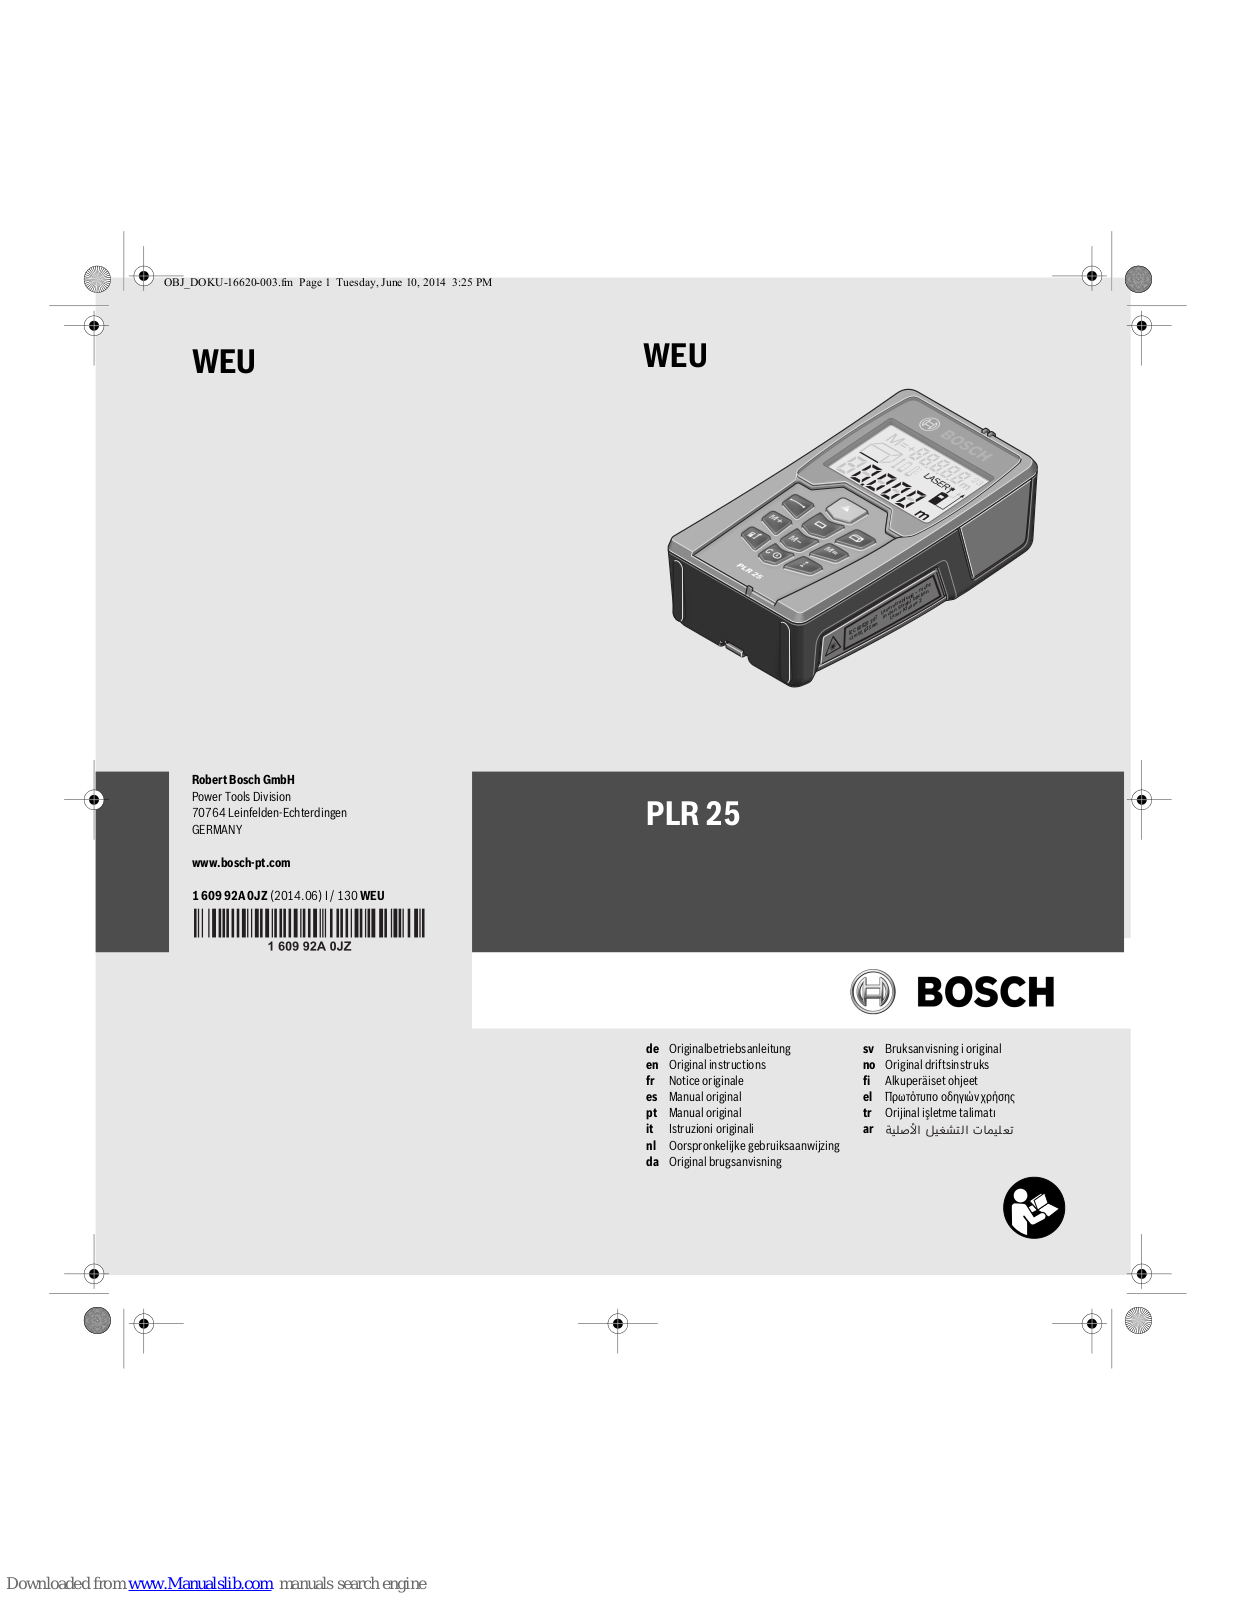 Bosch PLR 25 Original Instructions Manual